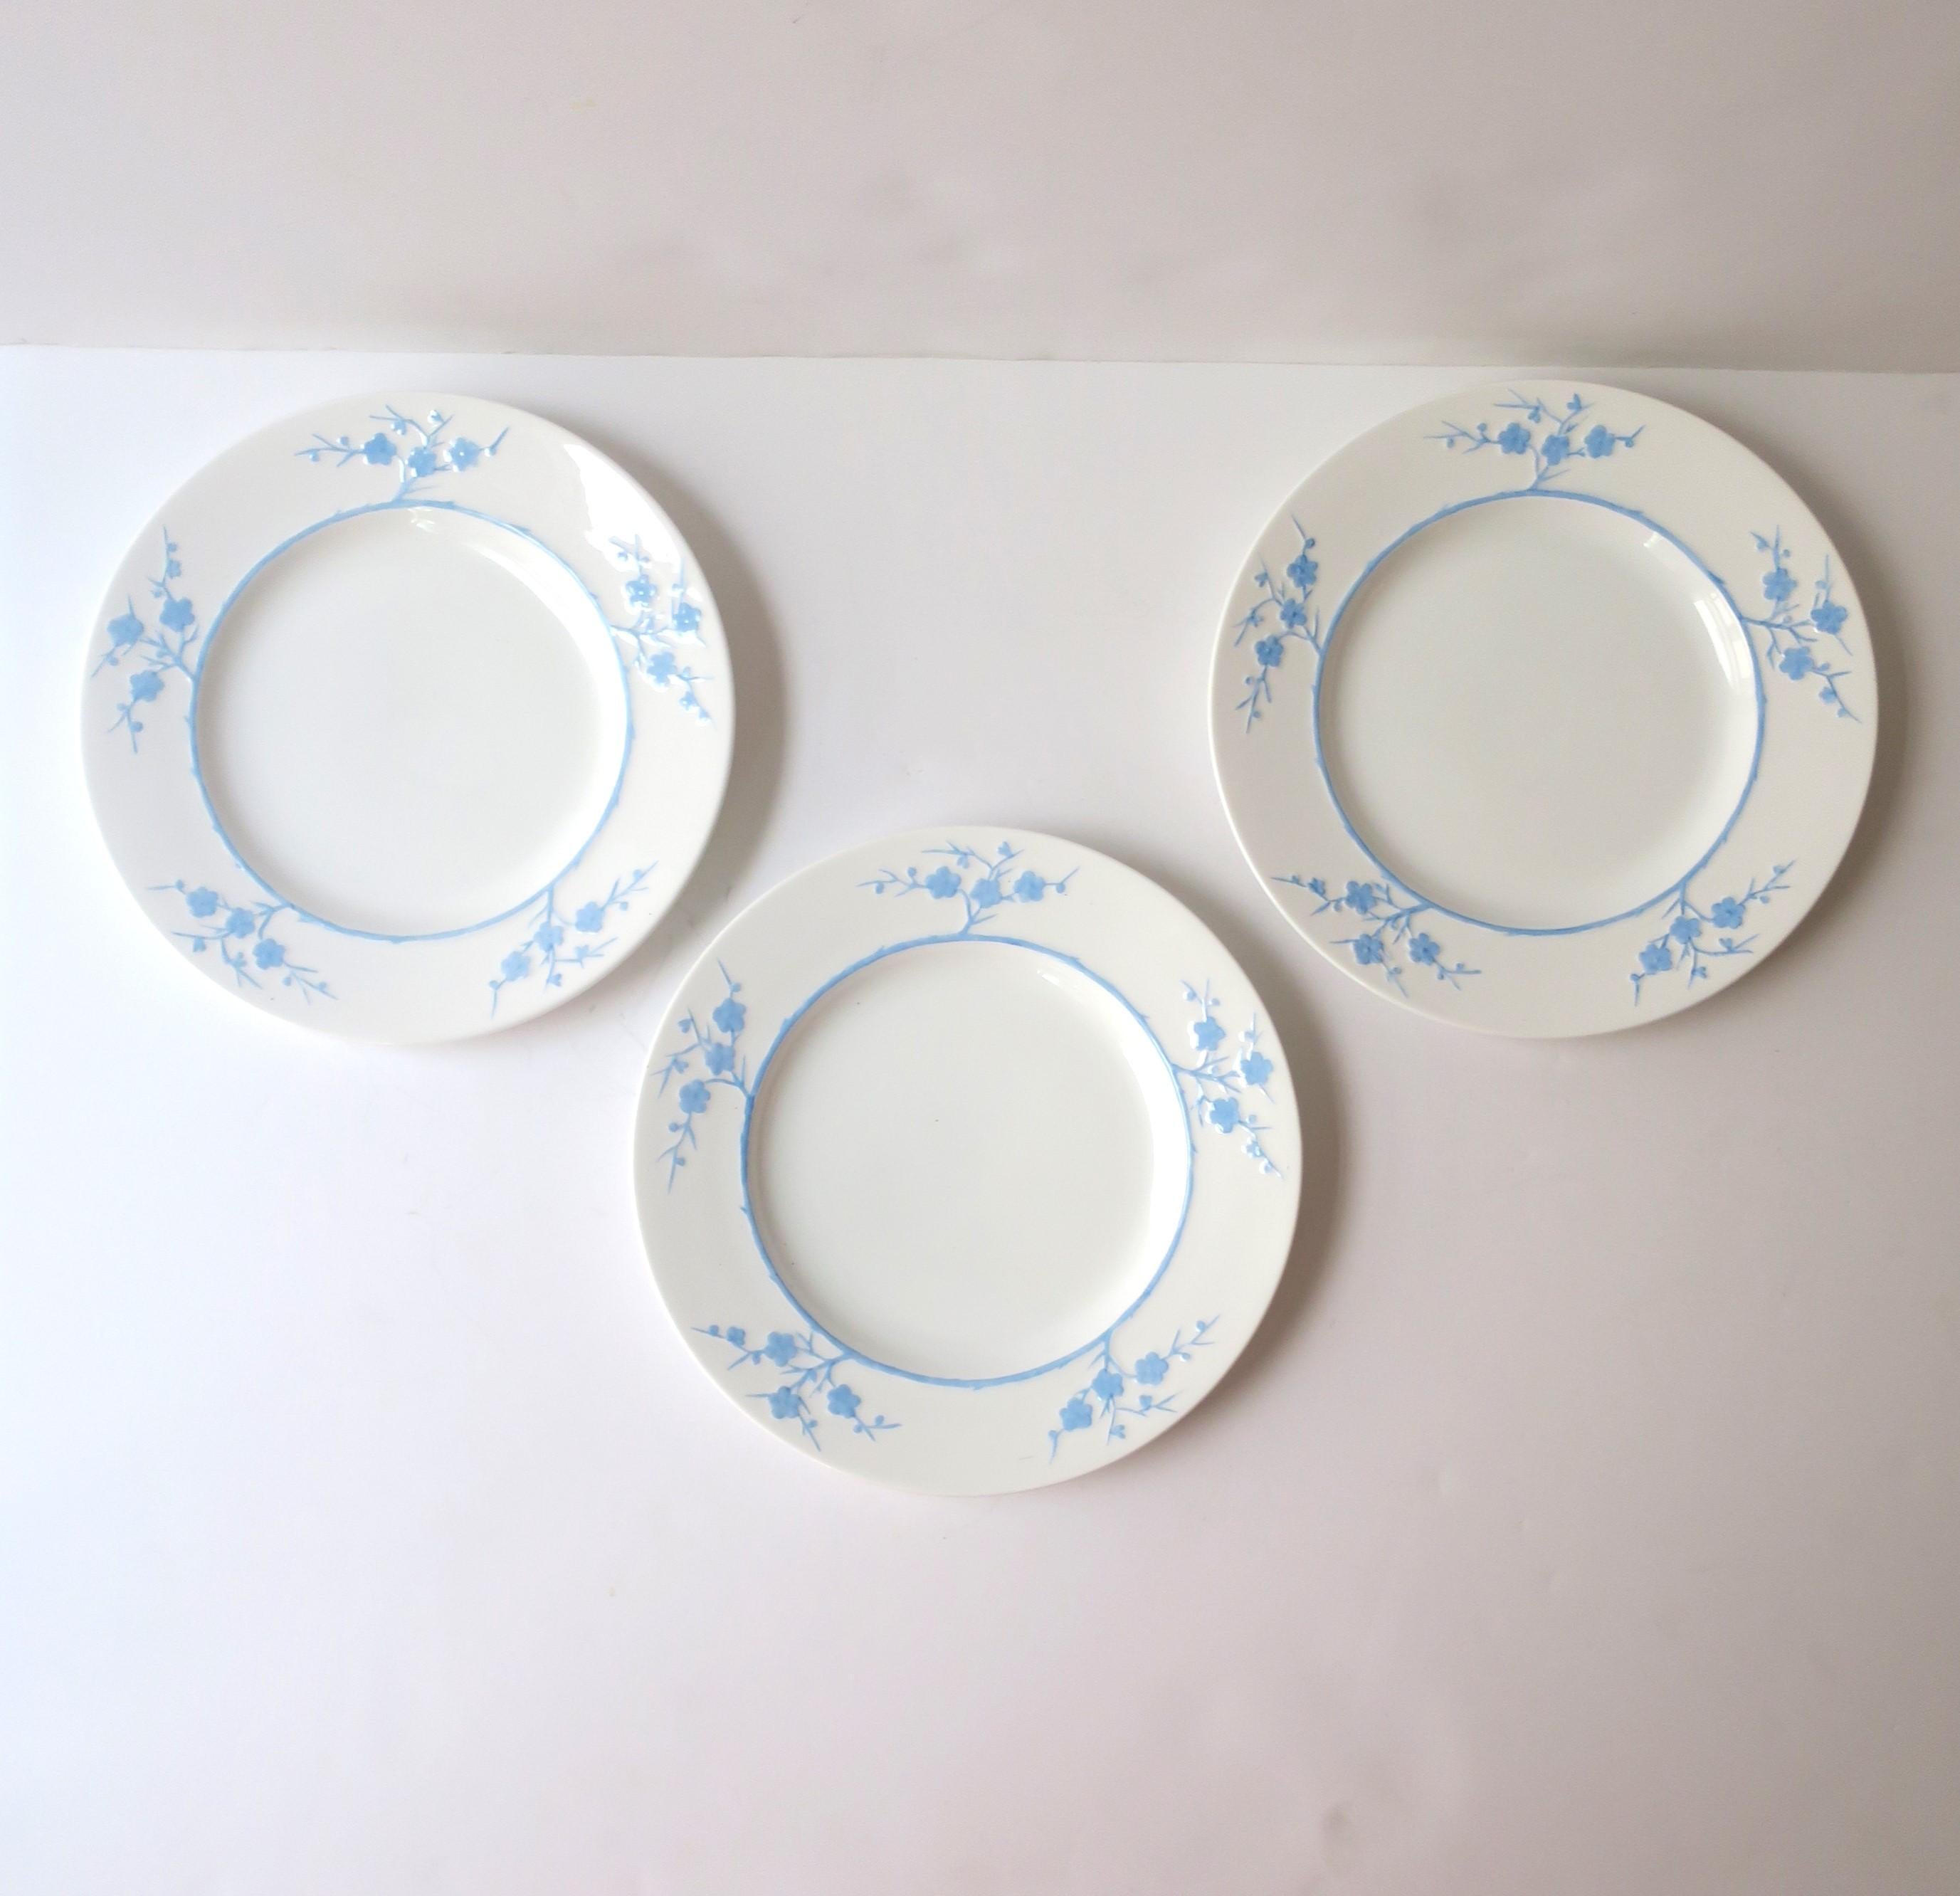 Vernissé Assiettes en porcelaine Blanche de Chine Geisha blanches et bleues Spode Copelands, lot de 3